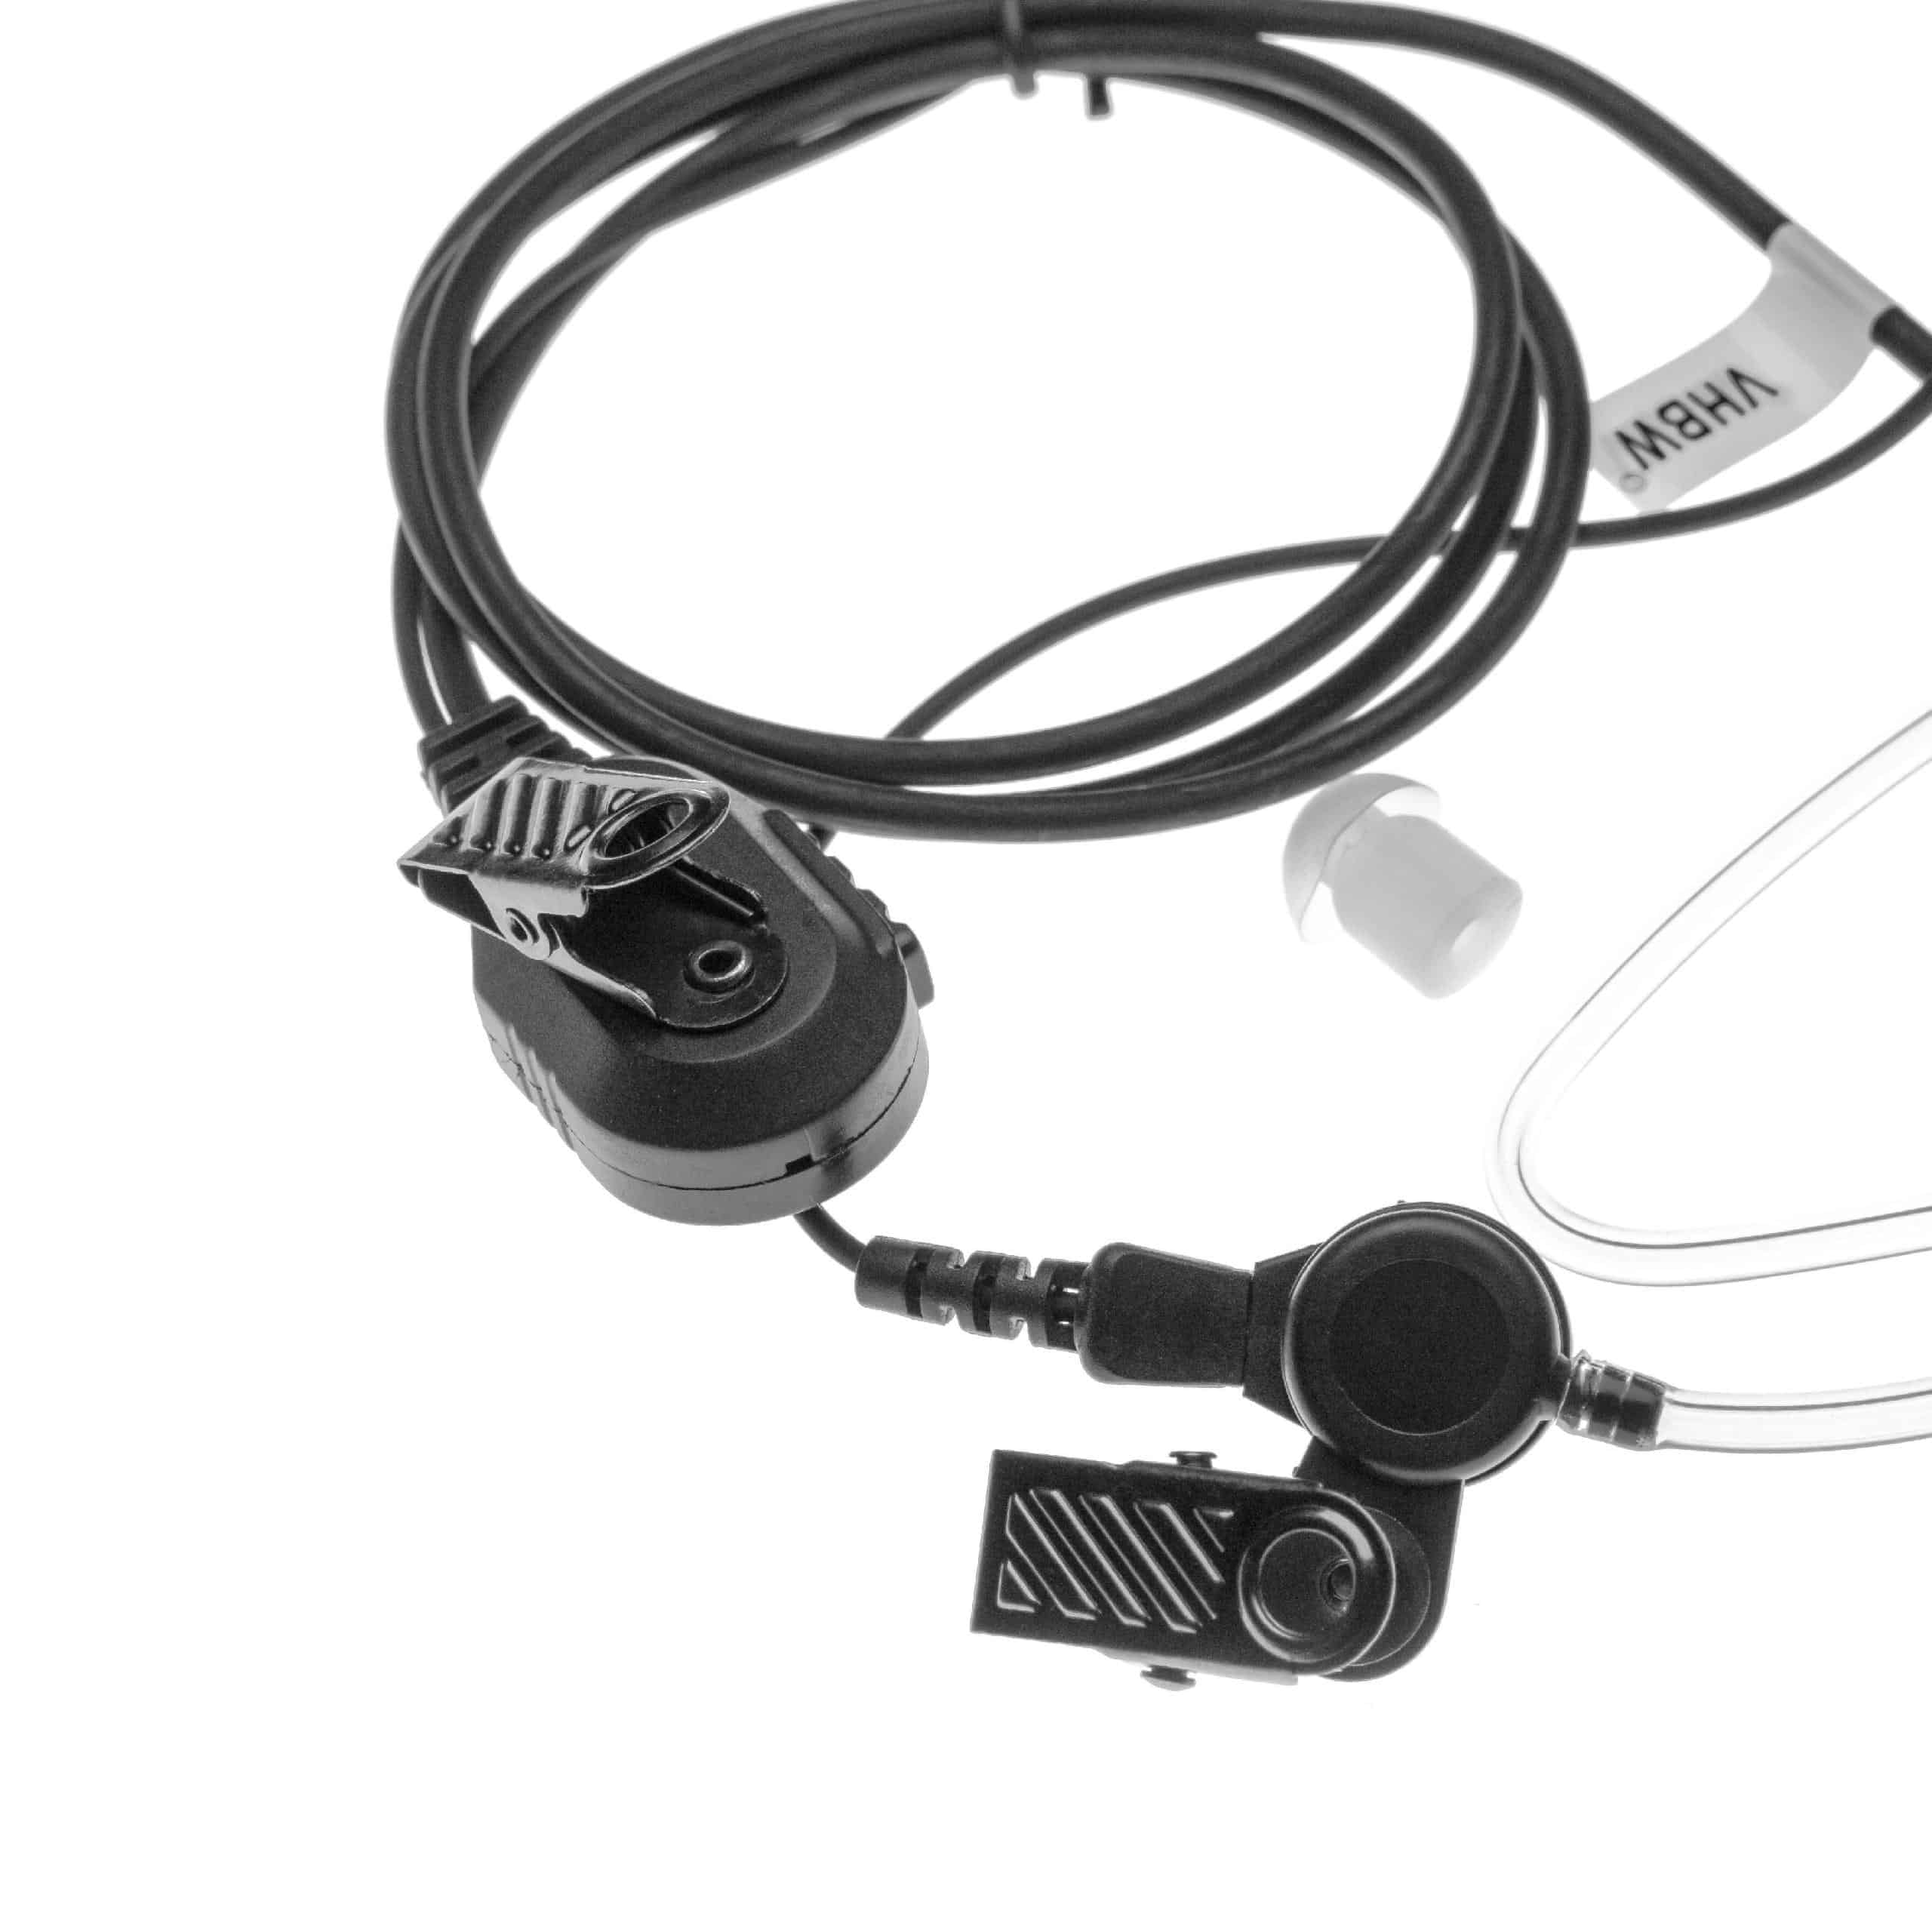 Auriculares para transceptor Yaesu VX-2R + micrófono push-to-talk + soporte clip + tubo acústico transparente